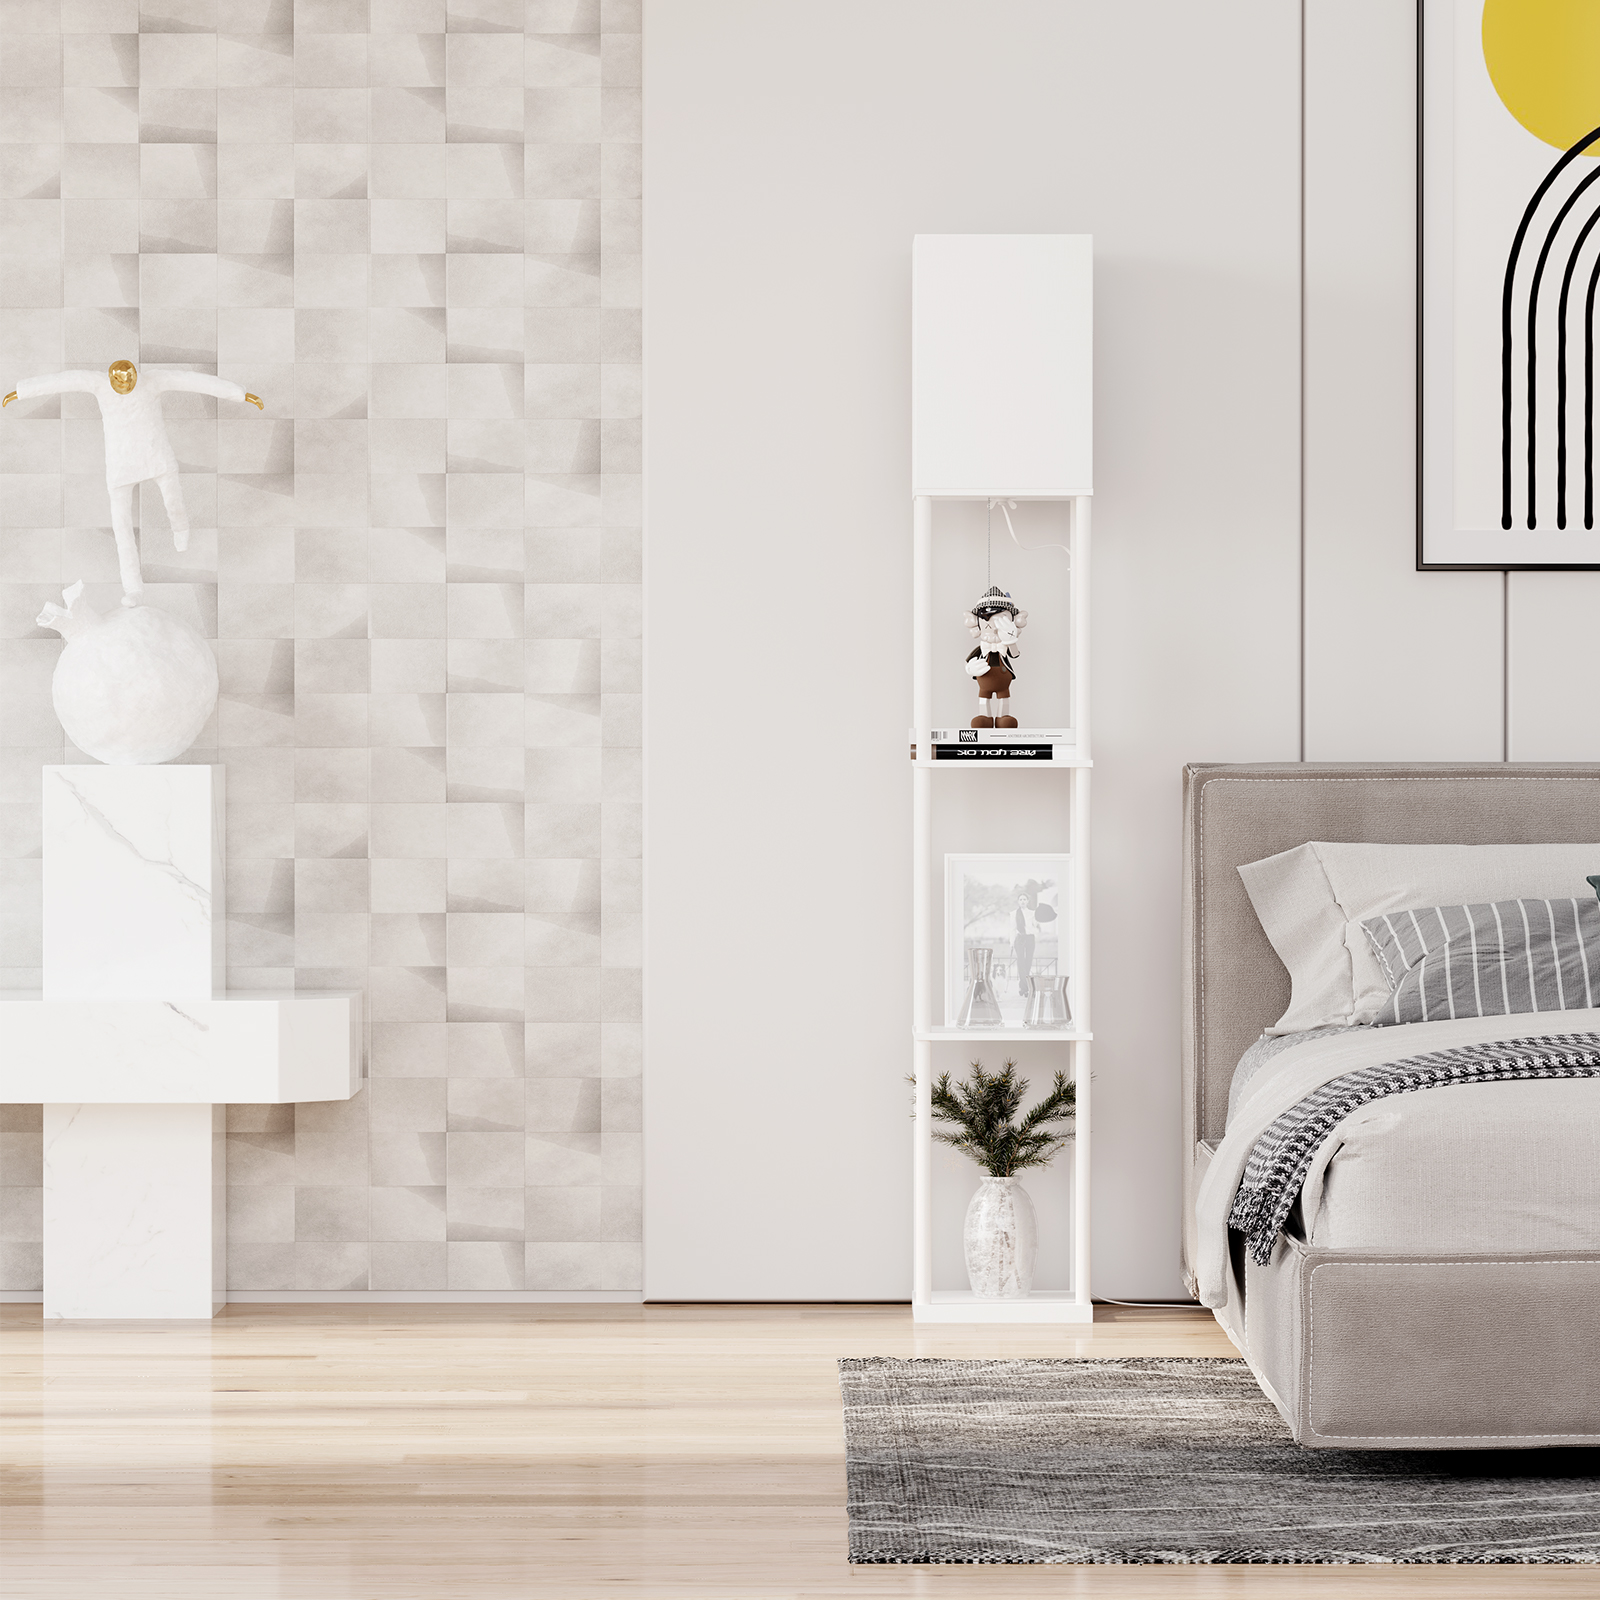 SUNMORY Modern Iron Shelf Floor Lamp for Living Room, White - image 4 of 10